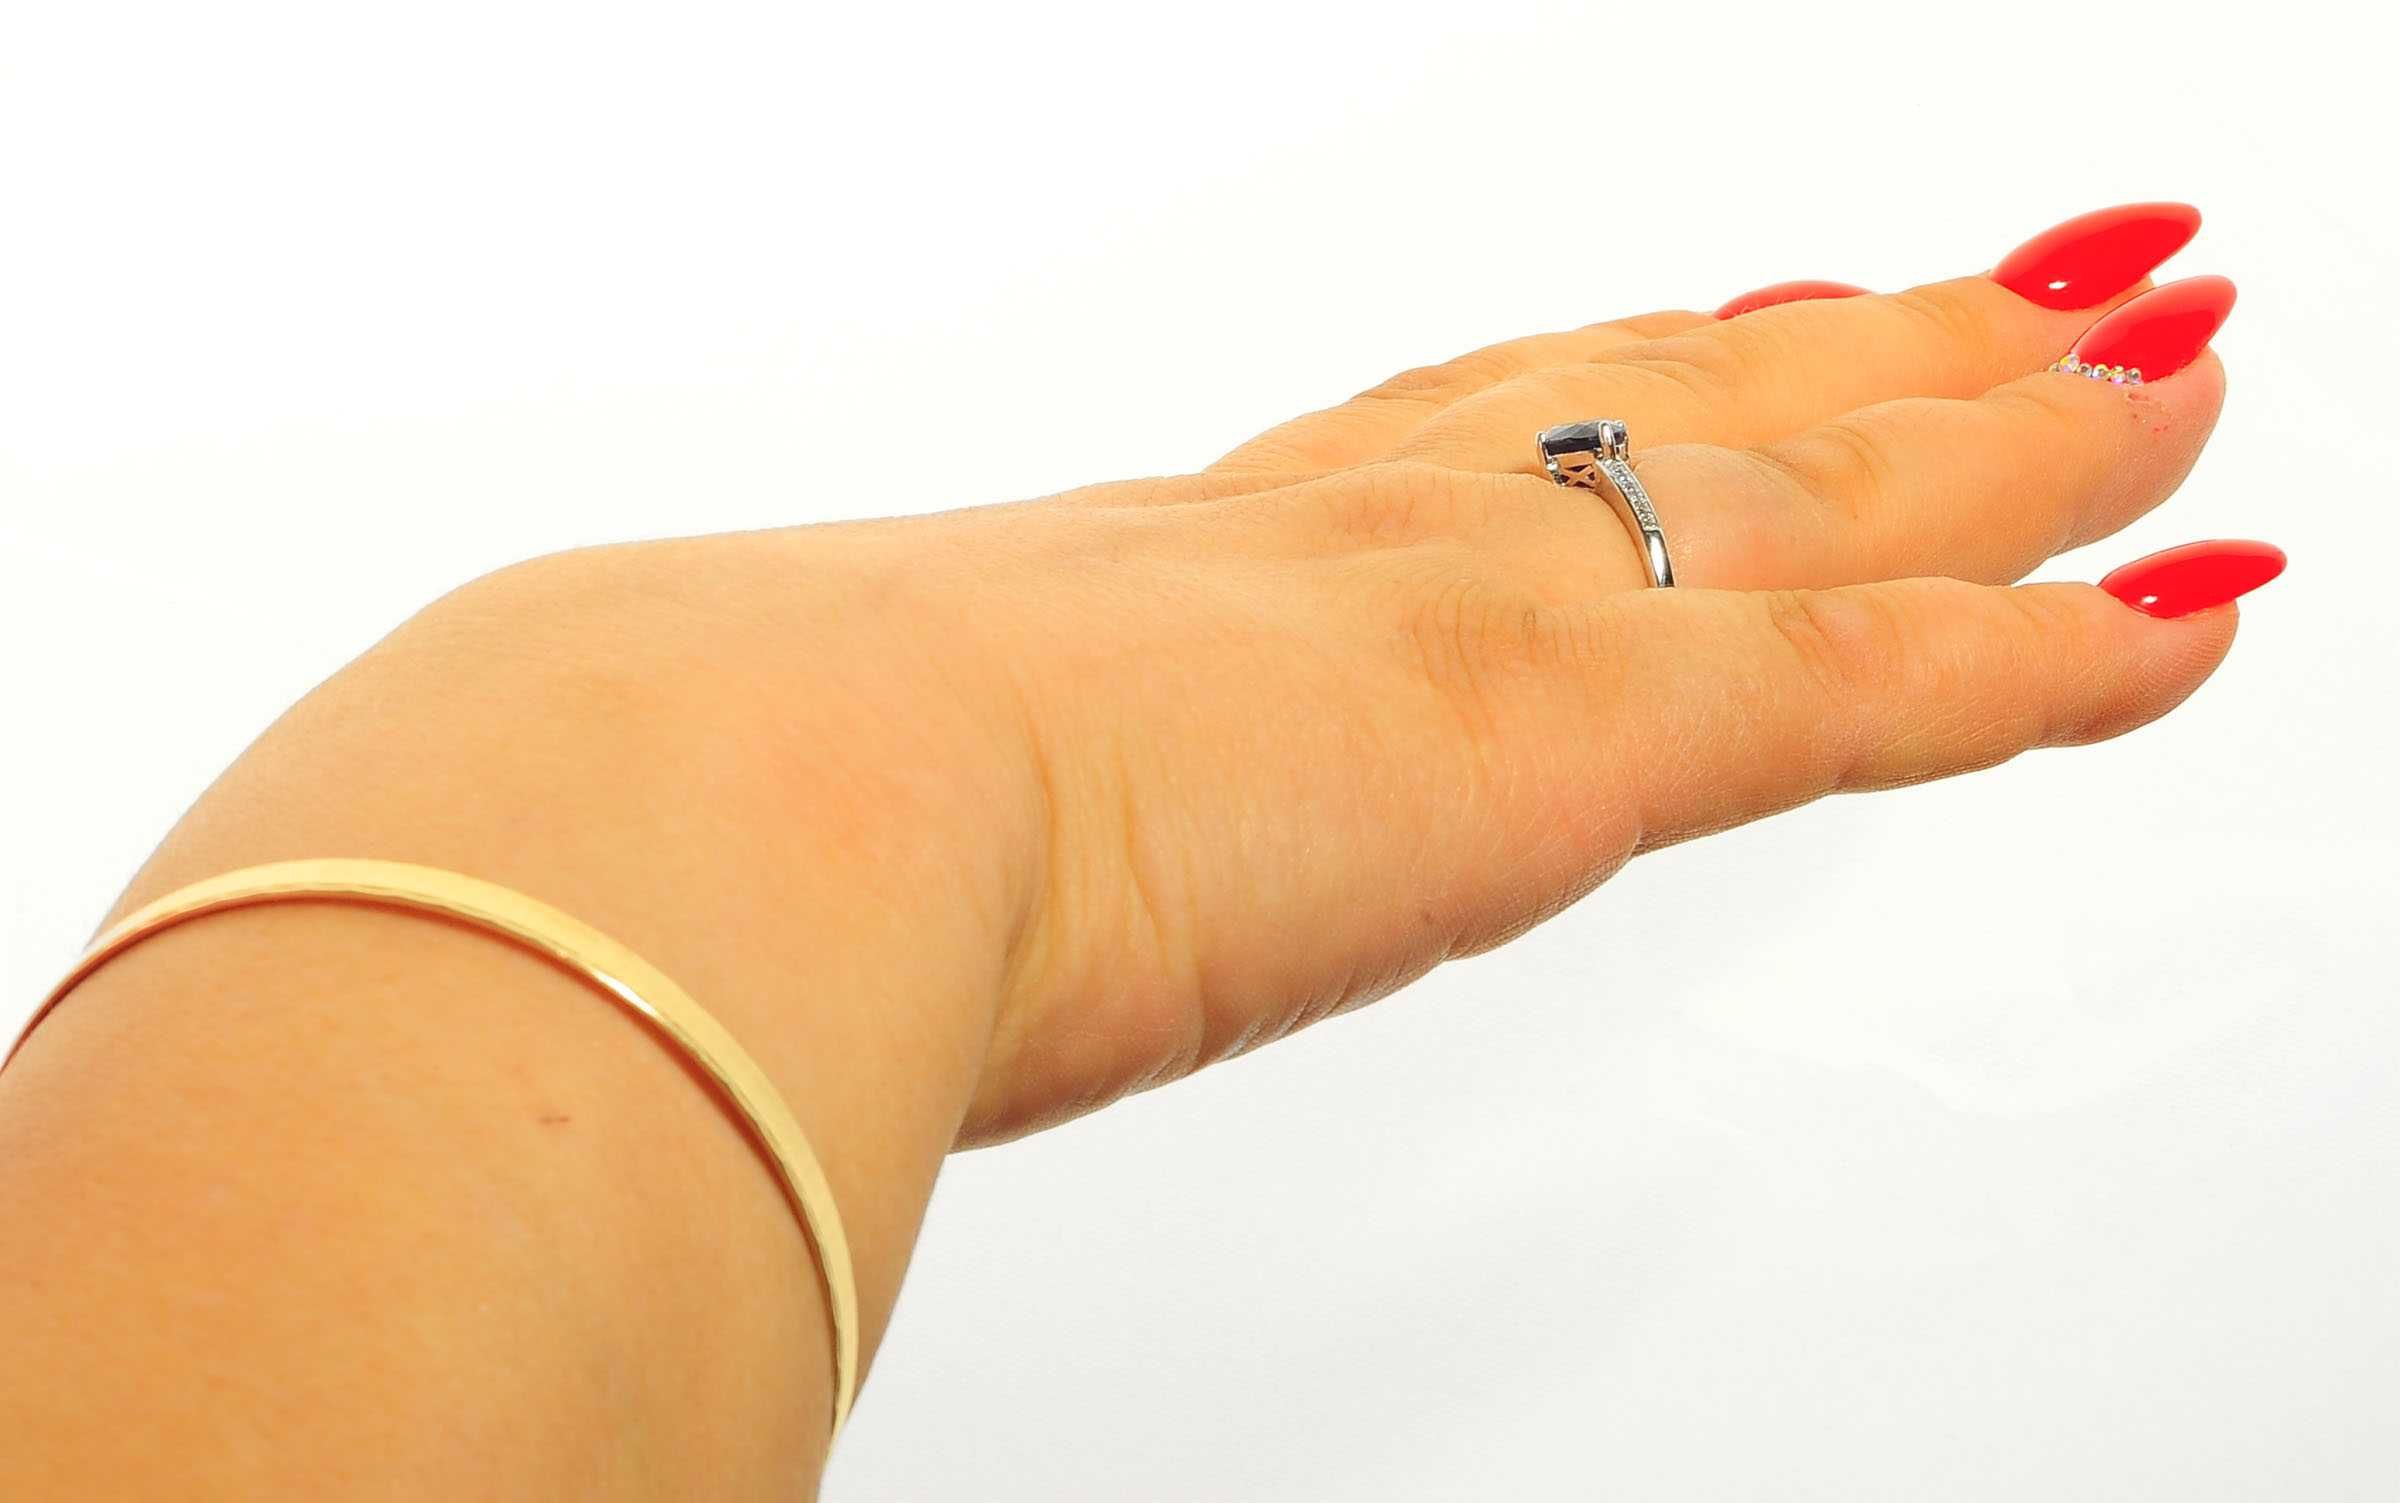 Srebrny pierścionek z szafirem 136723